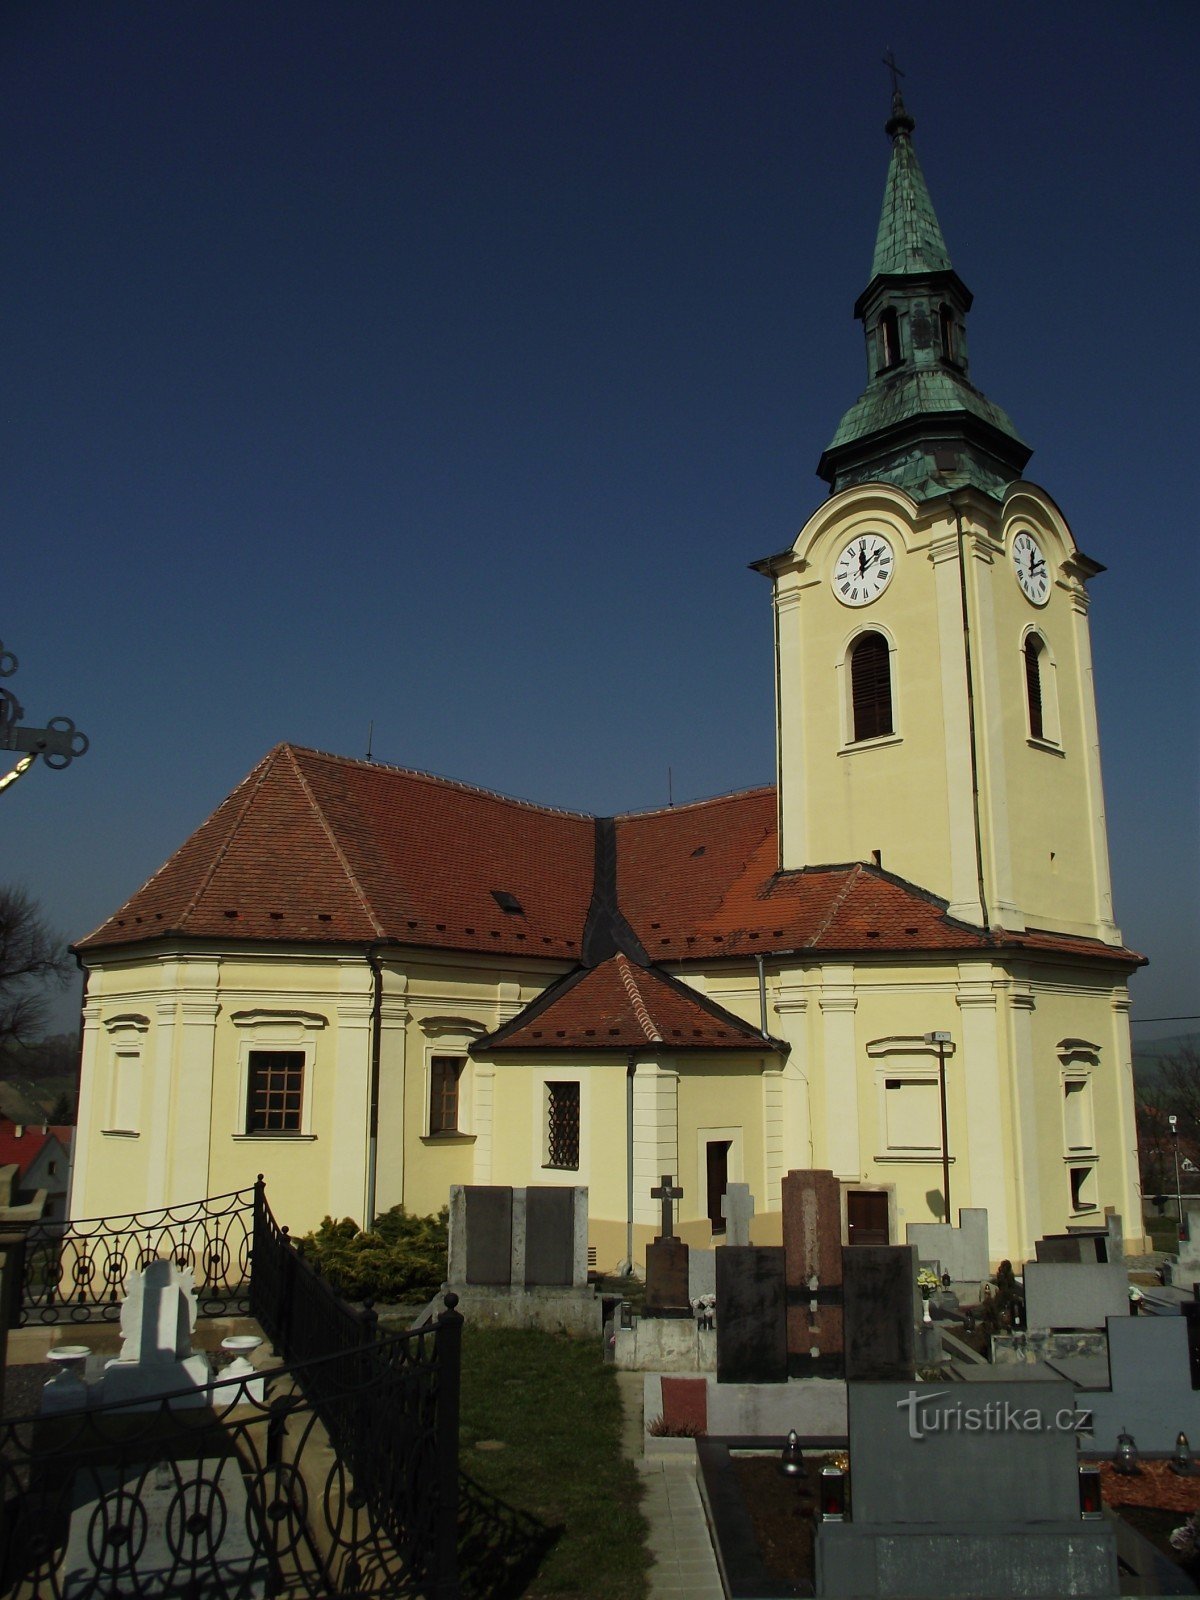 Bílovice - Pyhän Nikolauksen kirkko. Johannes Kastaja